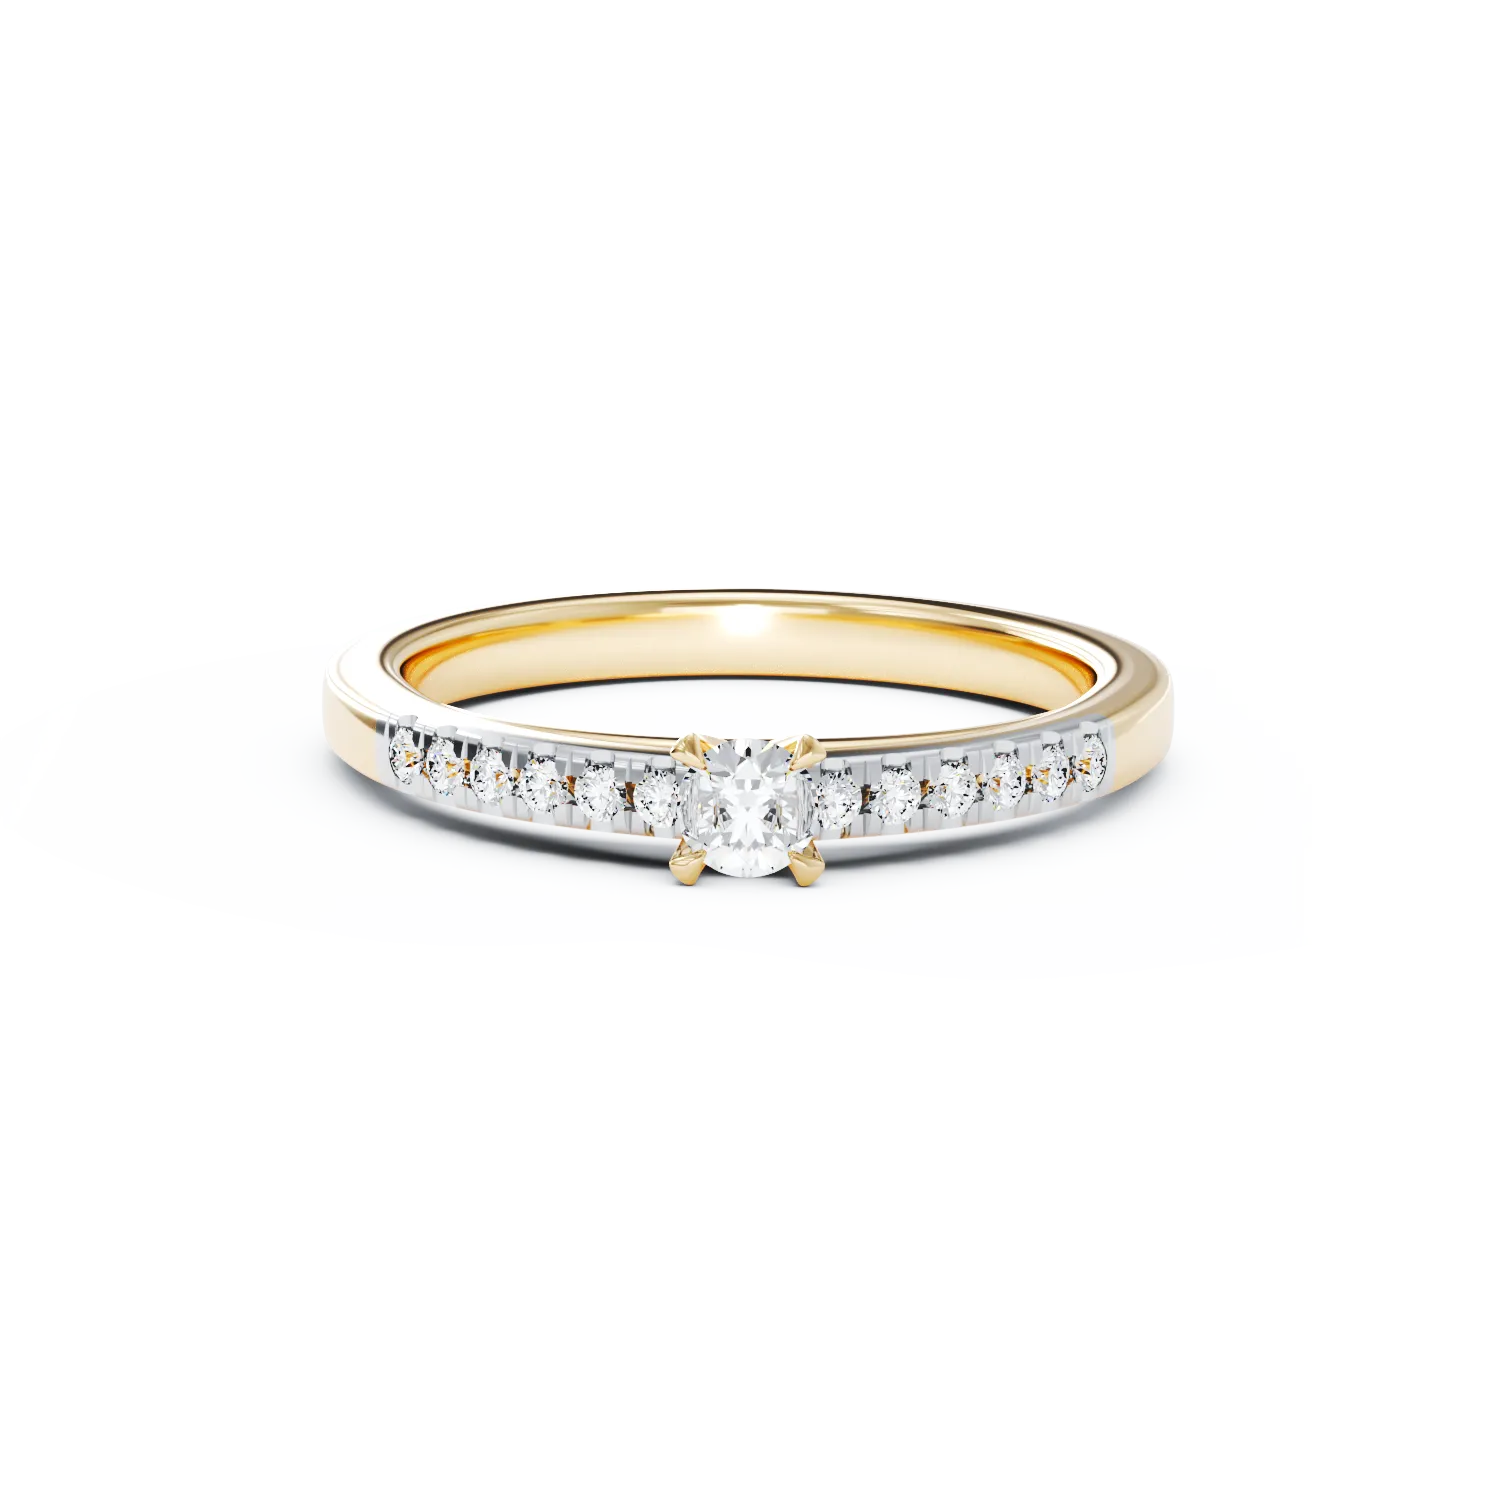 Eljegyzési gyűrű 18K-os sárga aranyból 0,24ct gyémánttal és 0,13ct gyémánttal. Gramm: 2,75